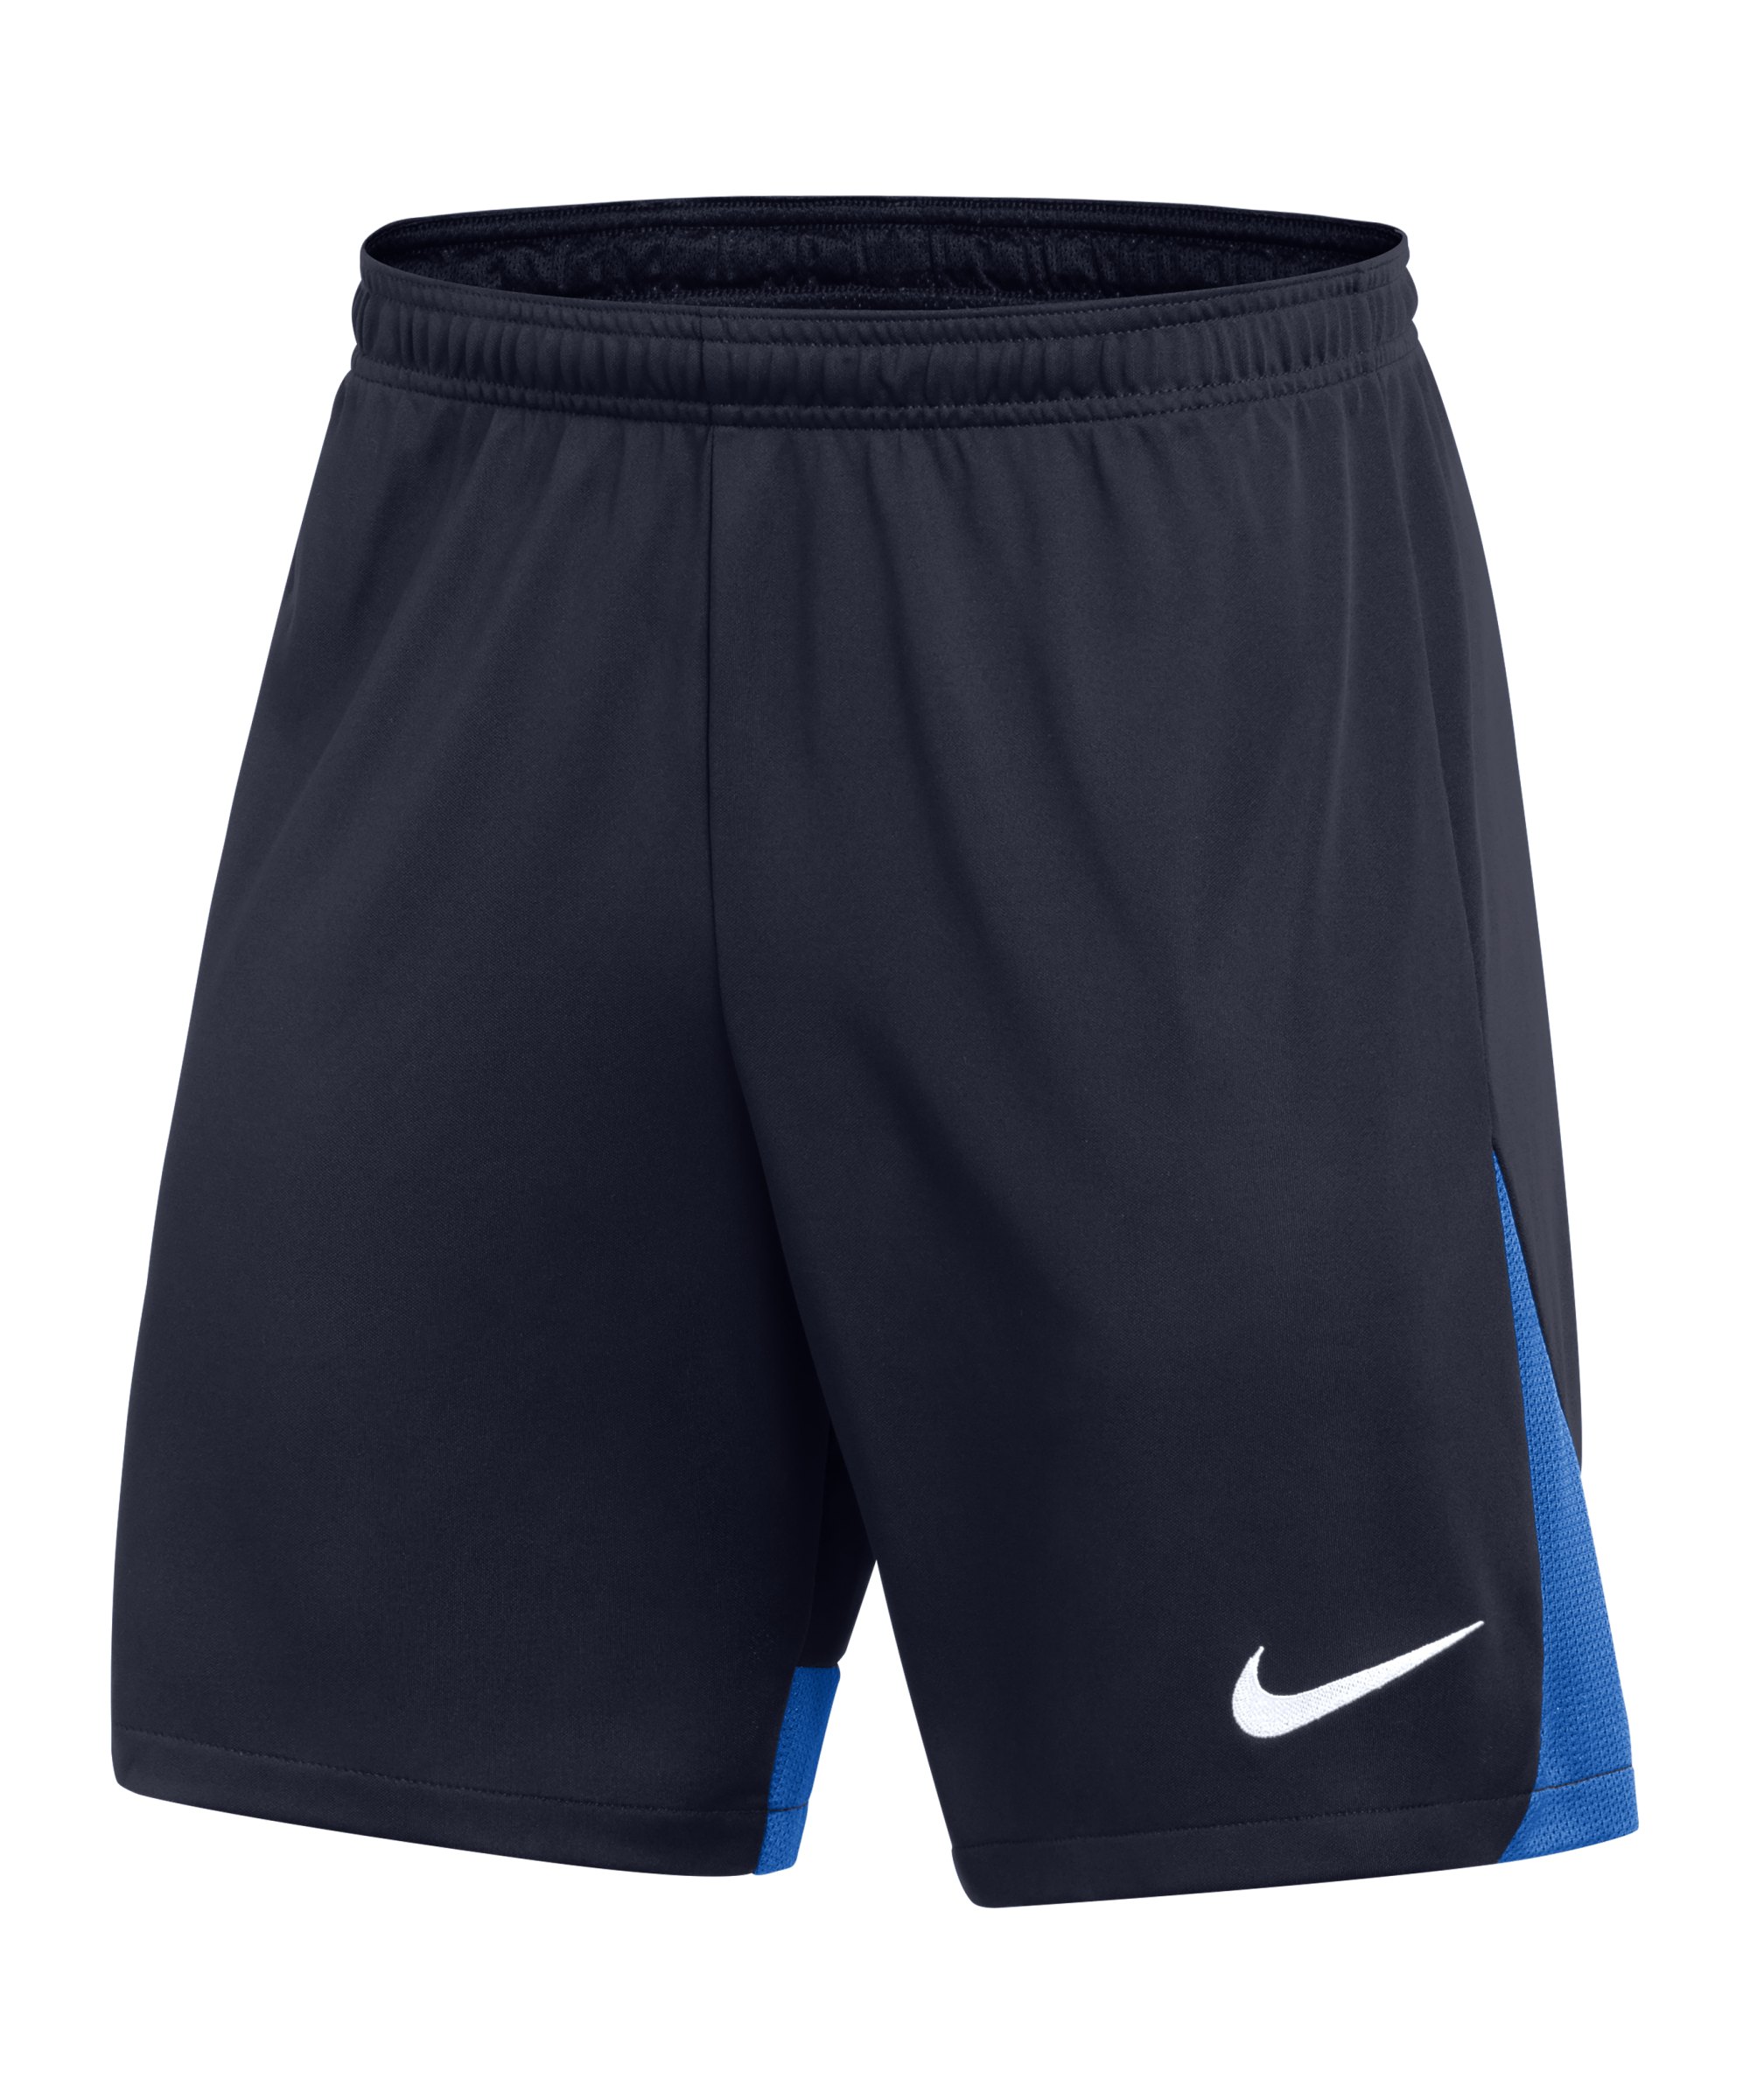 Nike Academy Pro Short Blau Weiss F451 - blau